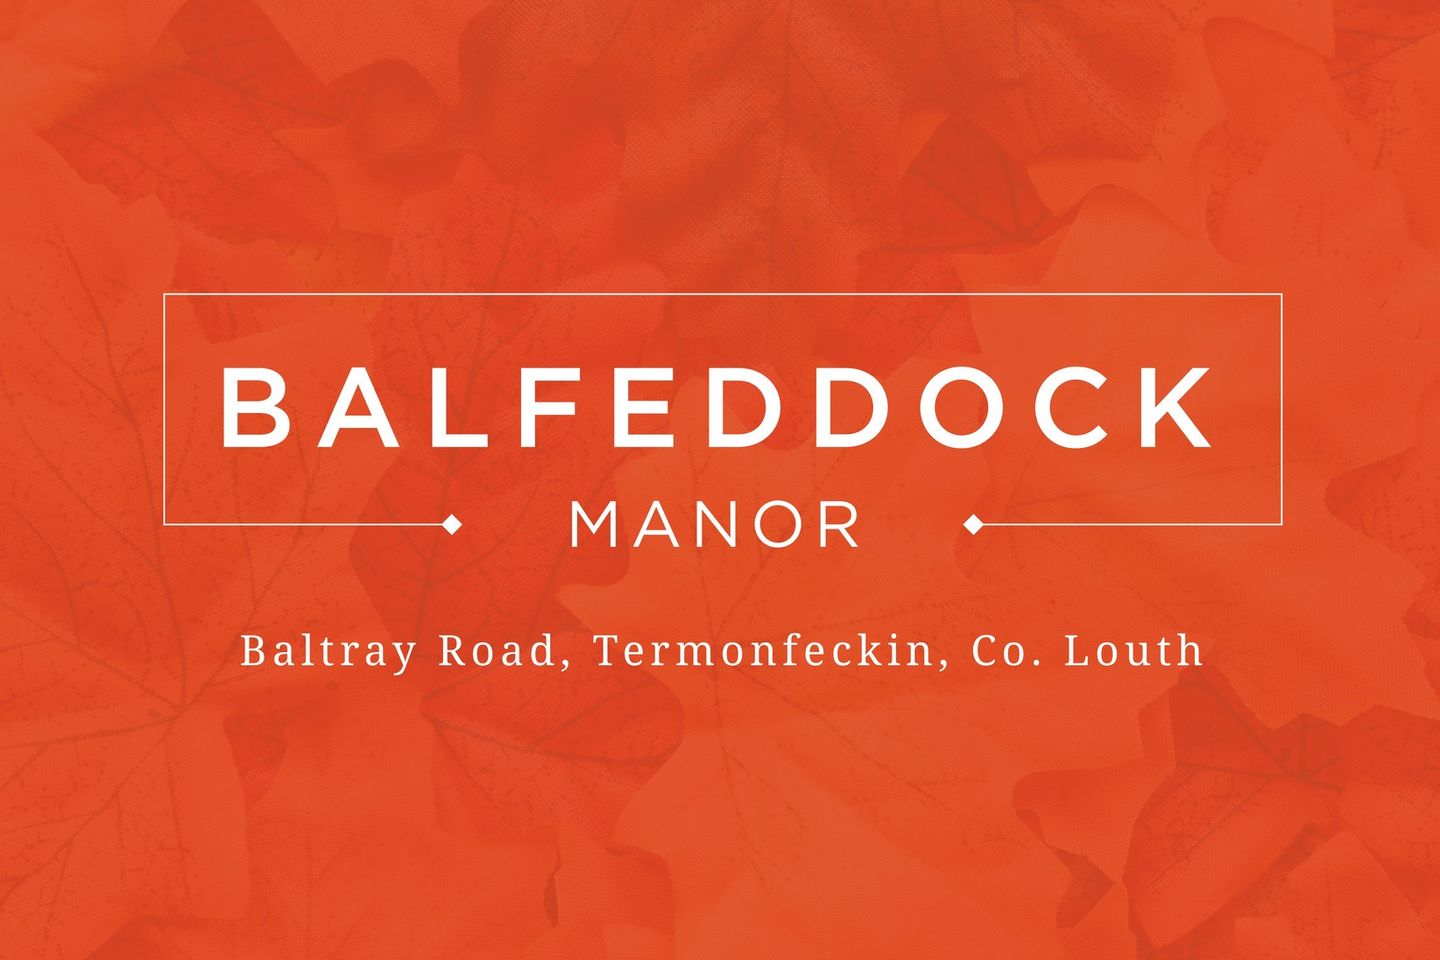 Balfeddock Manor , Baltray Road, Termonfeckin, Co. Louth